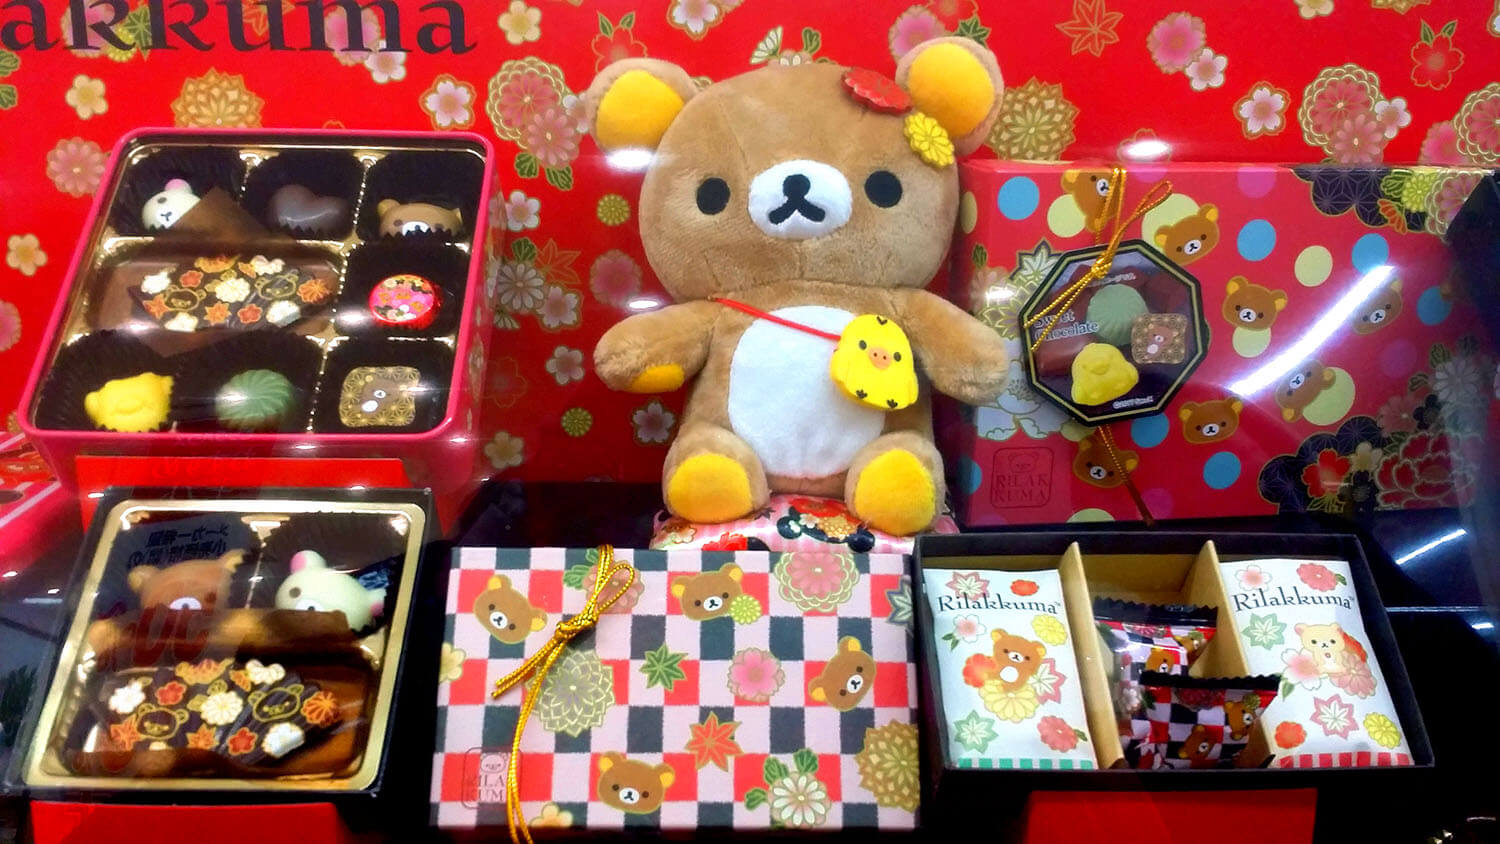 Valentine's Day Rakkuma Chocolate Gifts